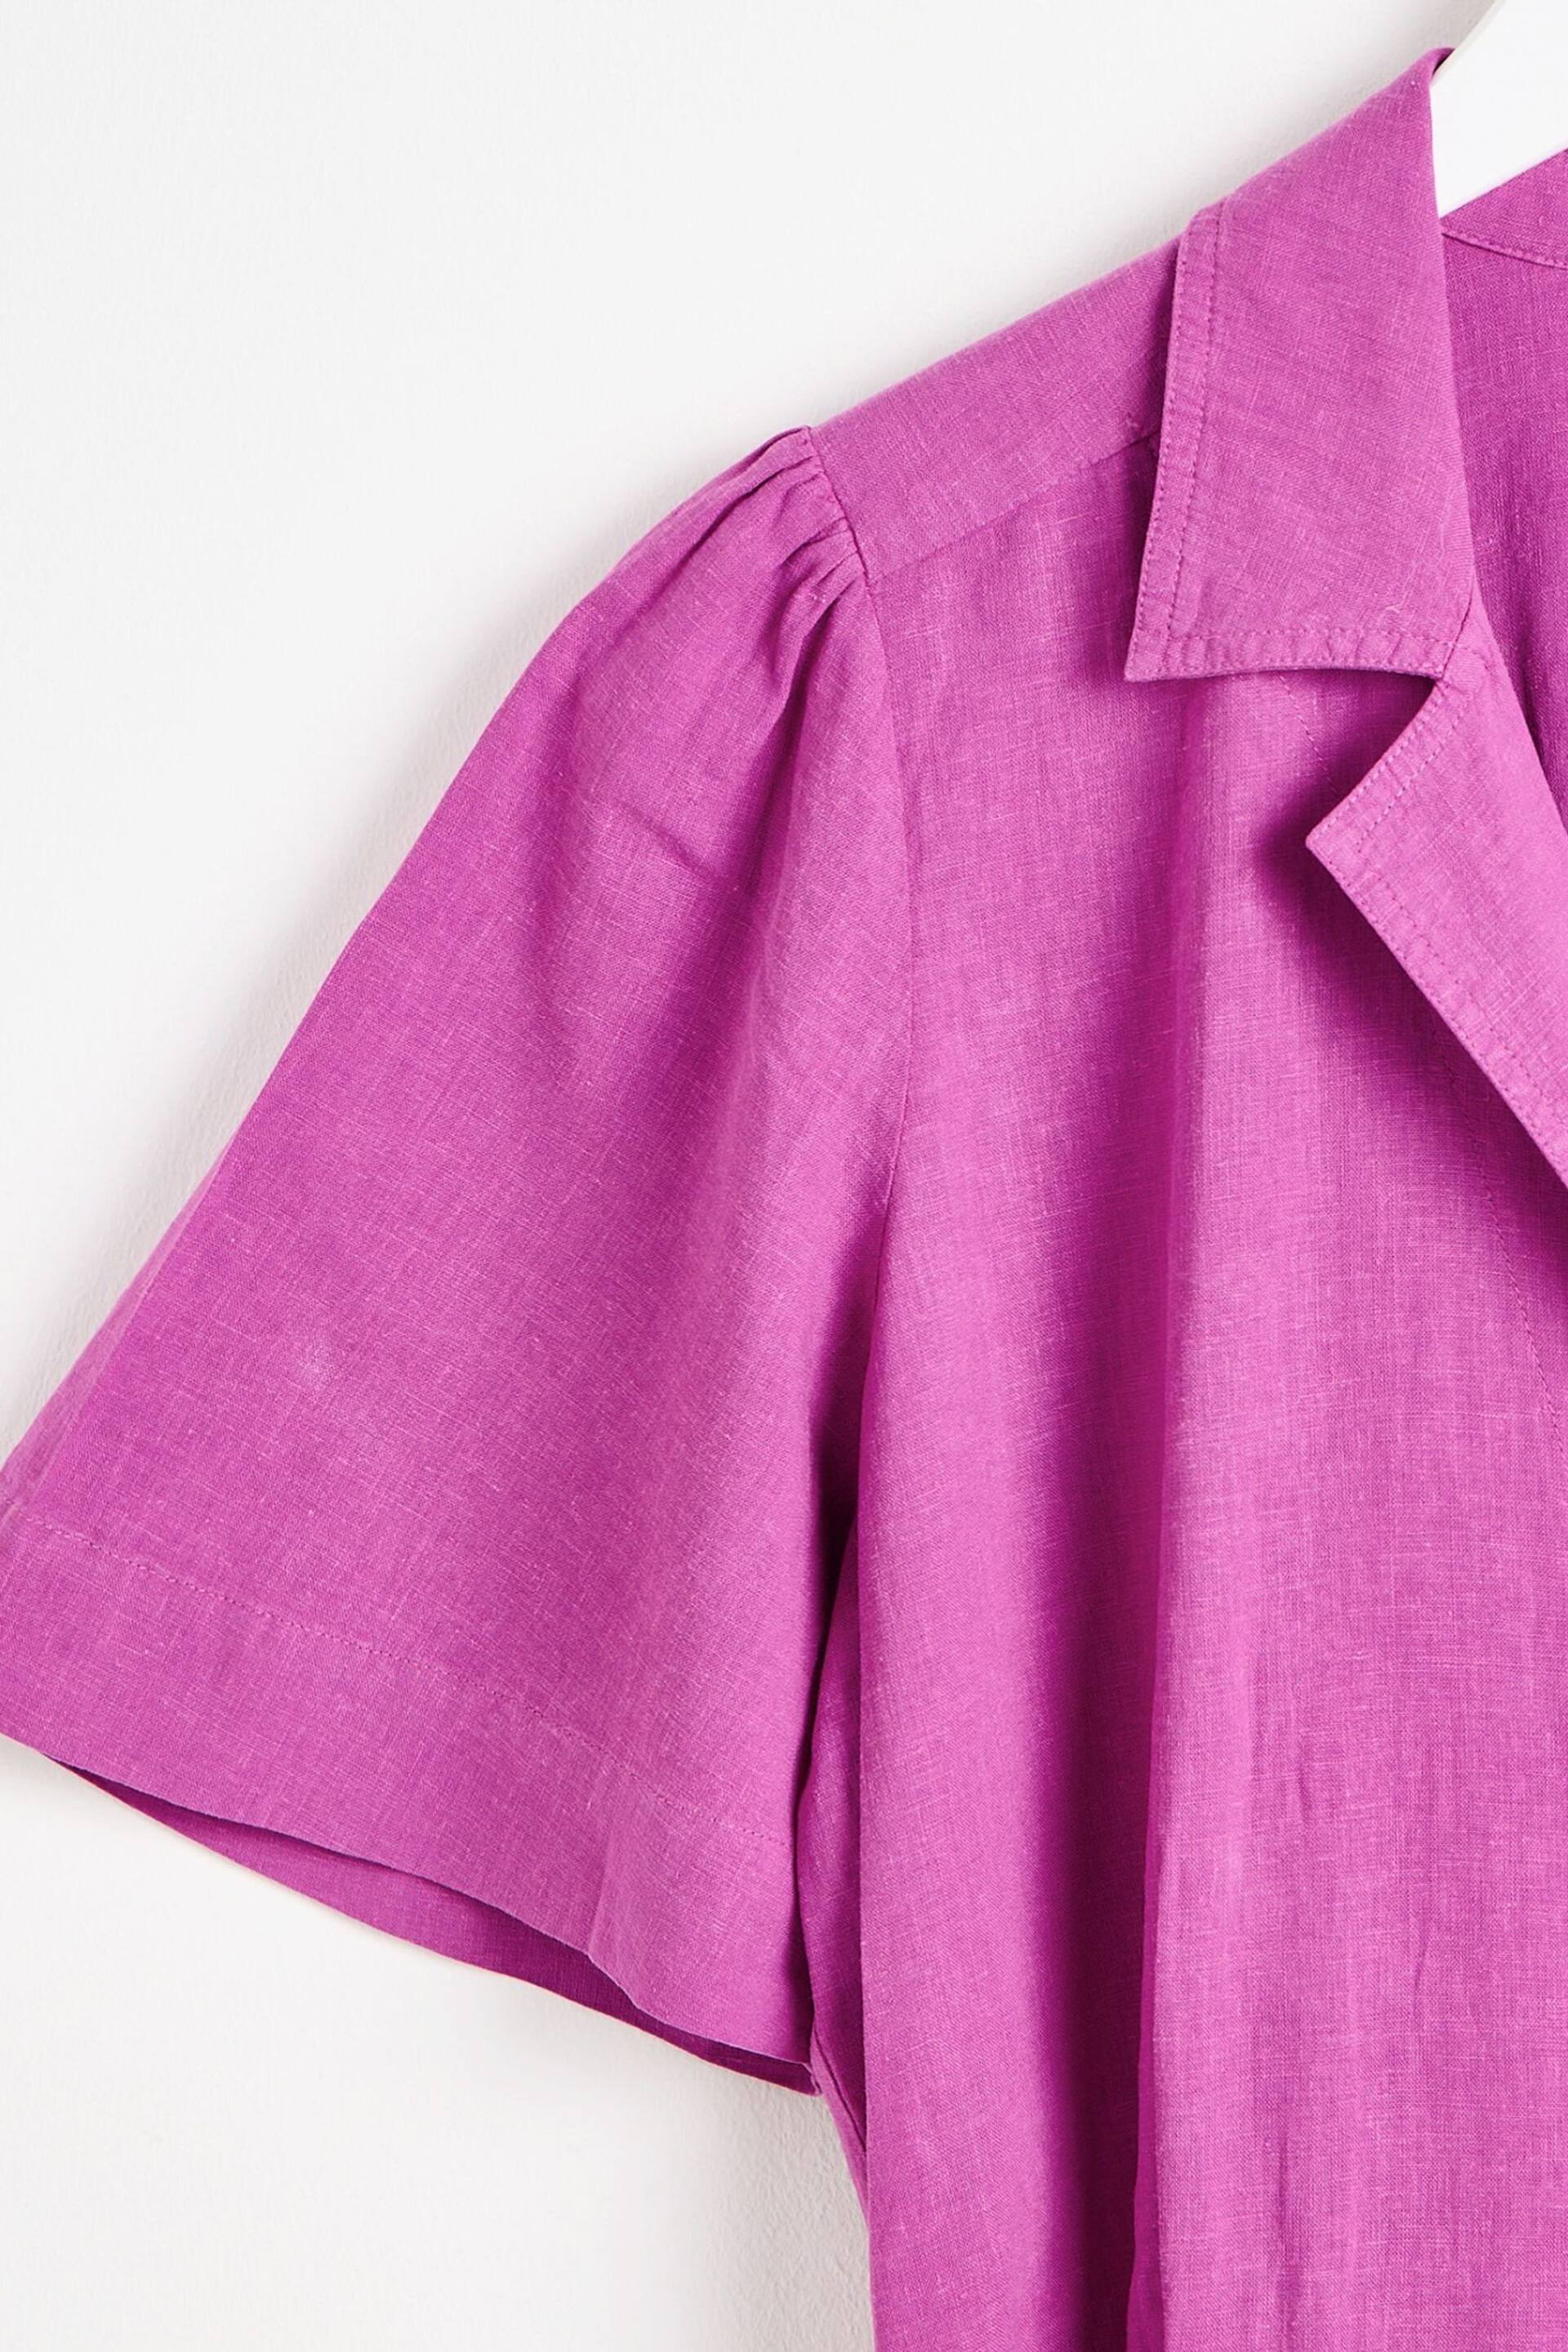 Oliver Bonas Purple Belted Linen Jumpsuit - Image 4 of 8